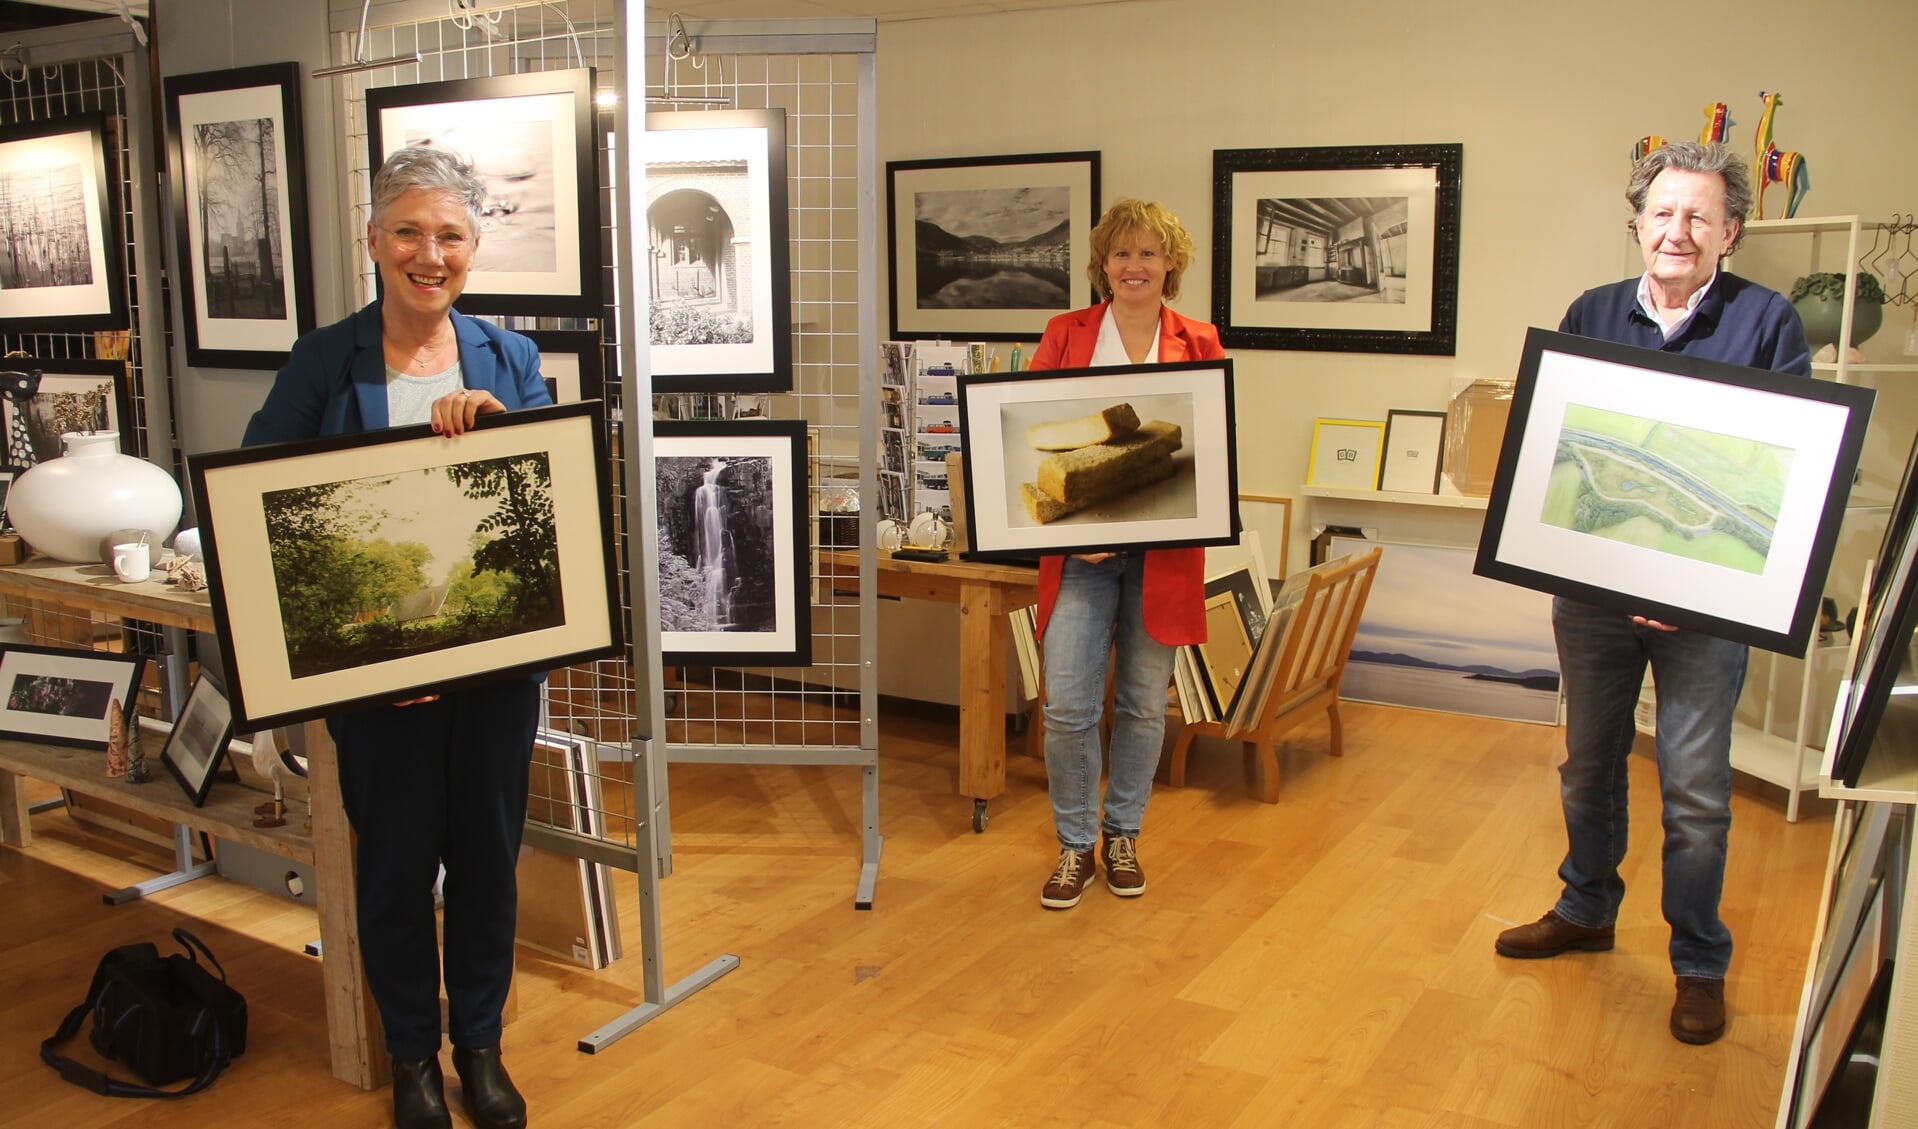 De winnaars van de fotowedstrijd, Van links naar rechts: Ria Groot Zevert, Hedwig Grevers en Jan van der Linden. Foto: Lineke Voltman)